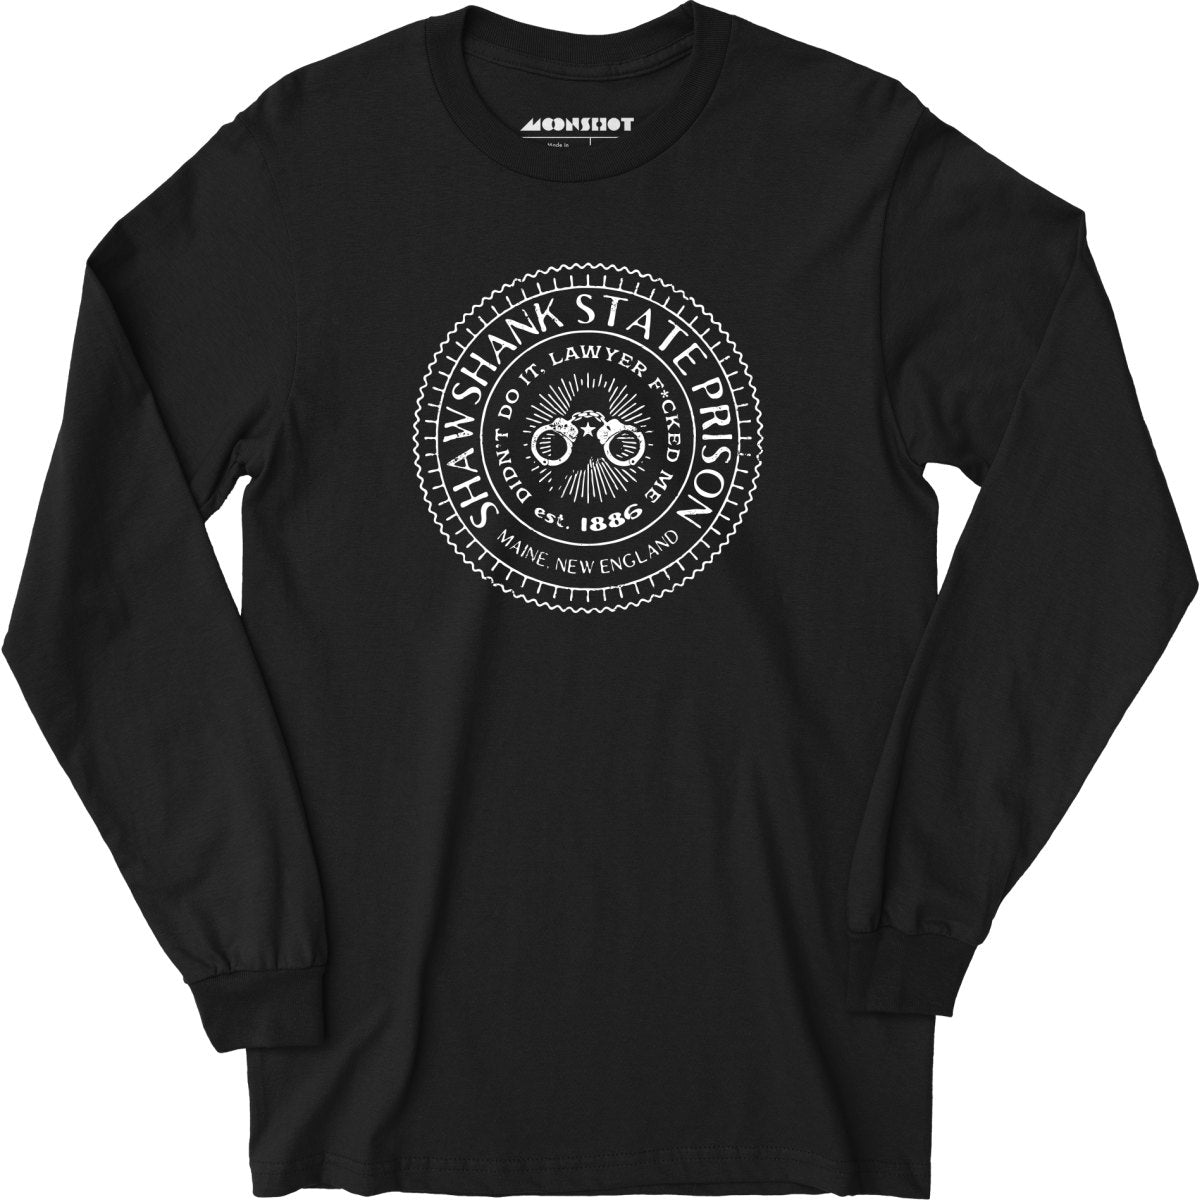 Shawshank State Prison - Long Sleeve T-Shirt